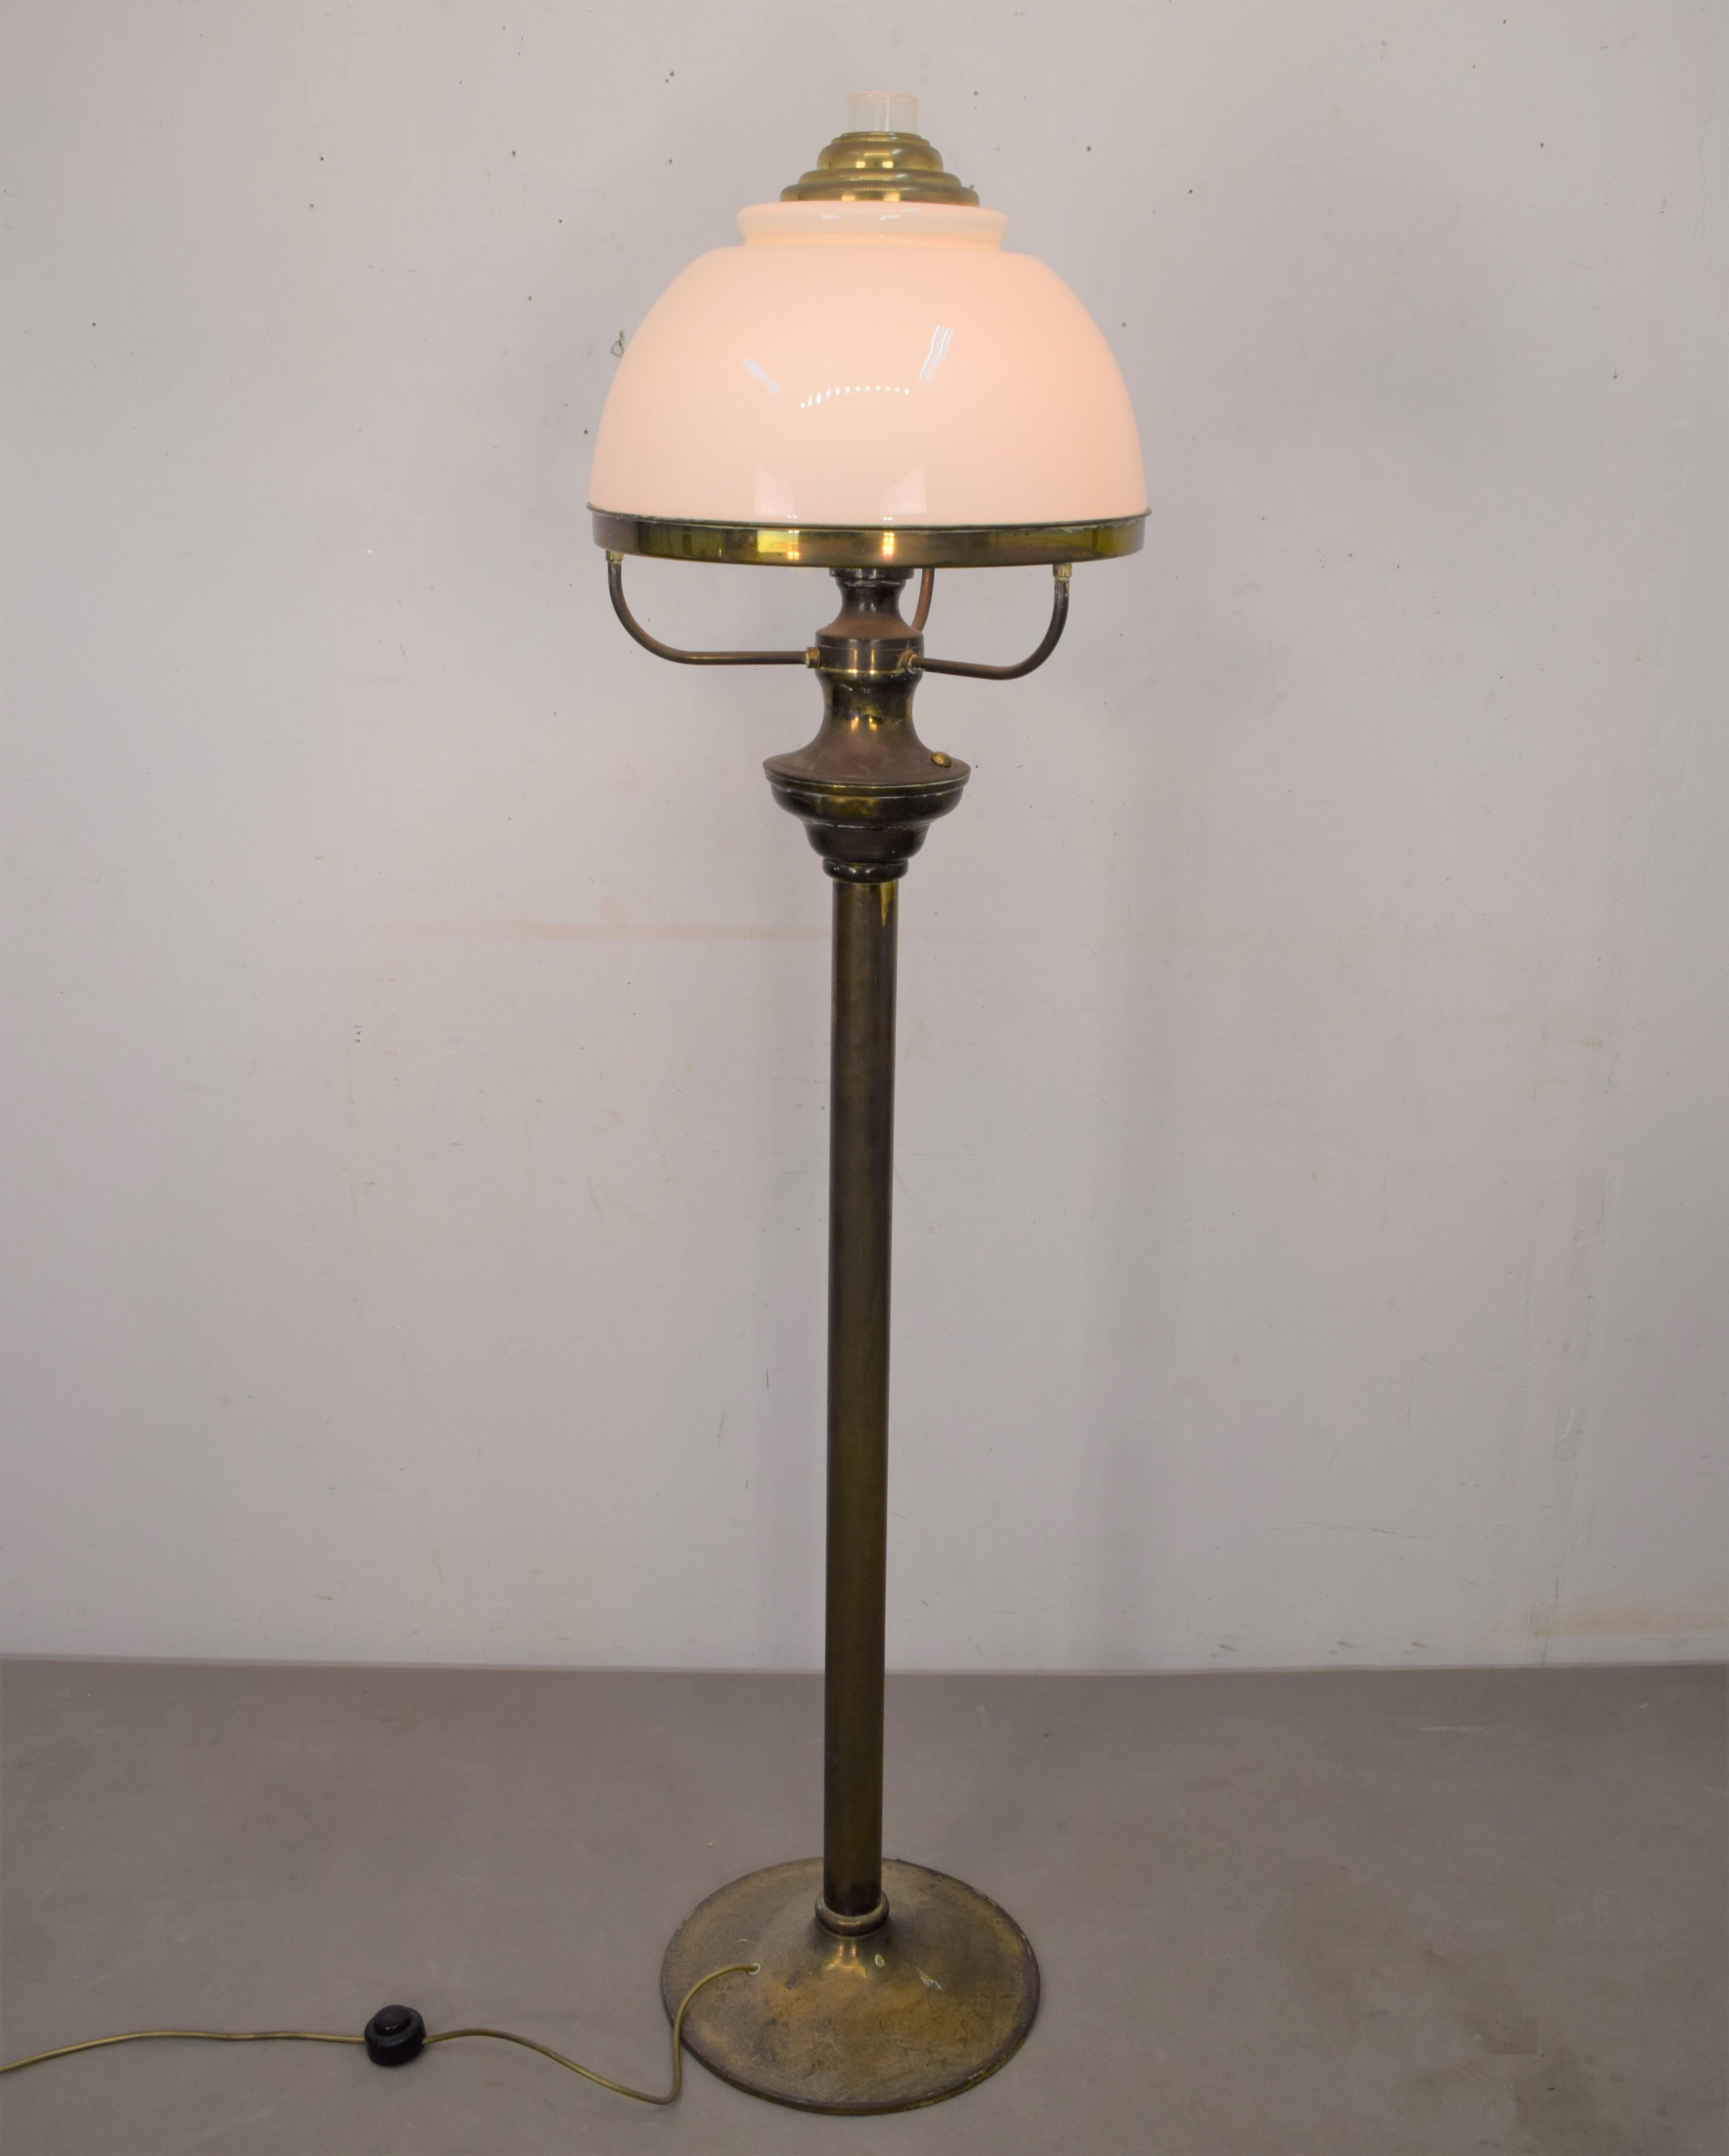 Italienische Stehlampe, 1950er Jahre.
Abmessungen: H=155 cm; D=40 cm.